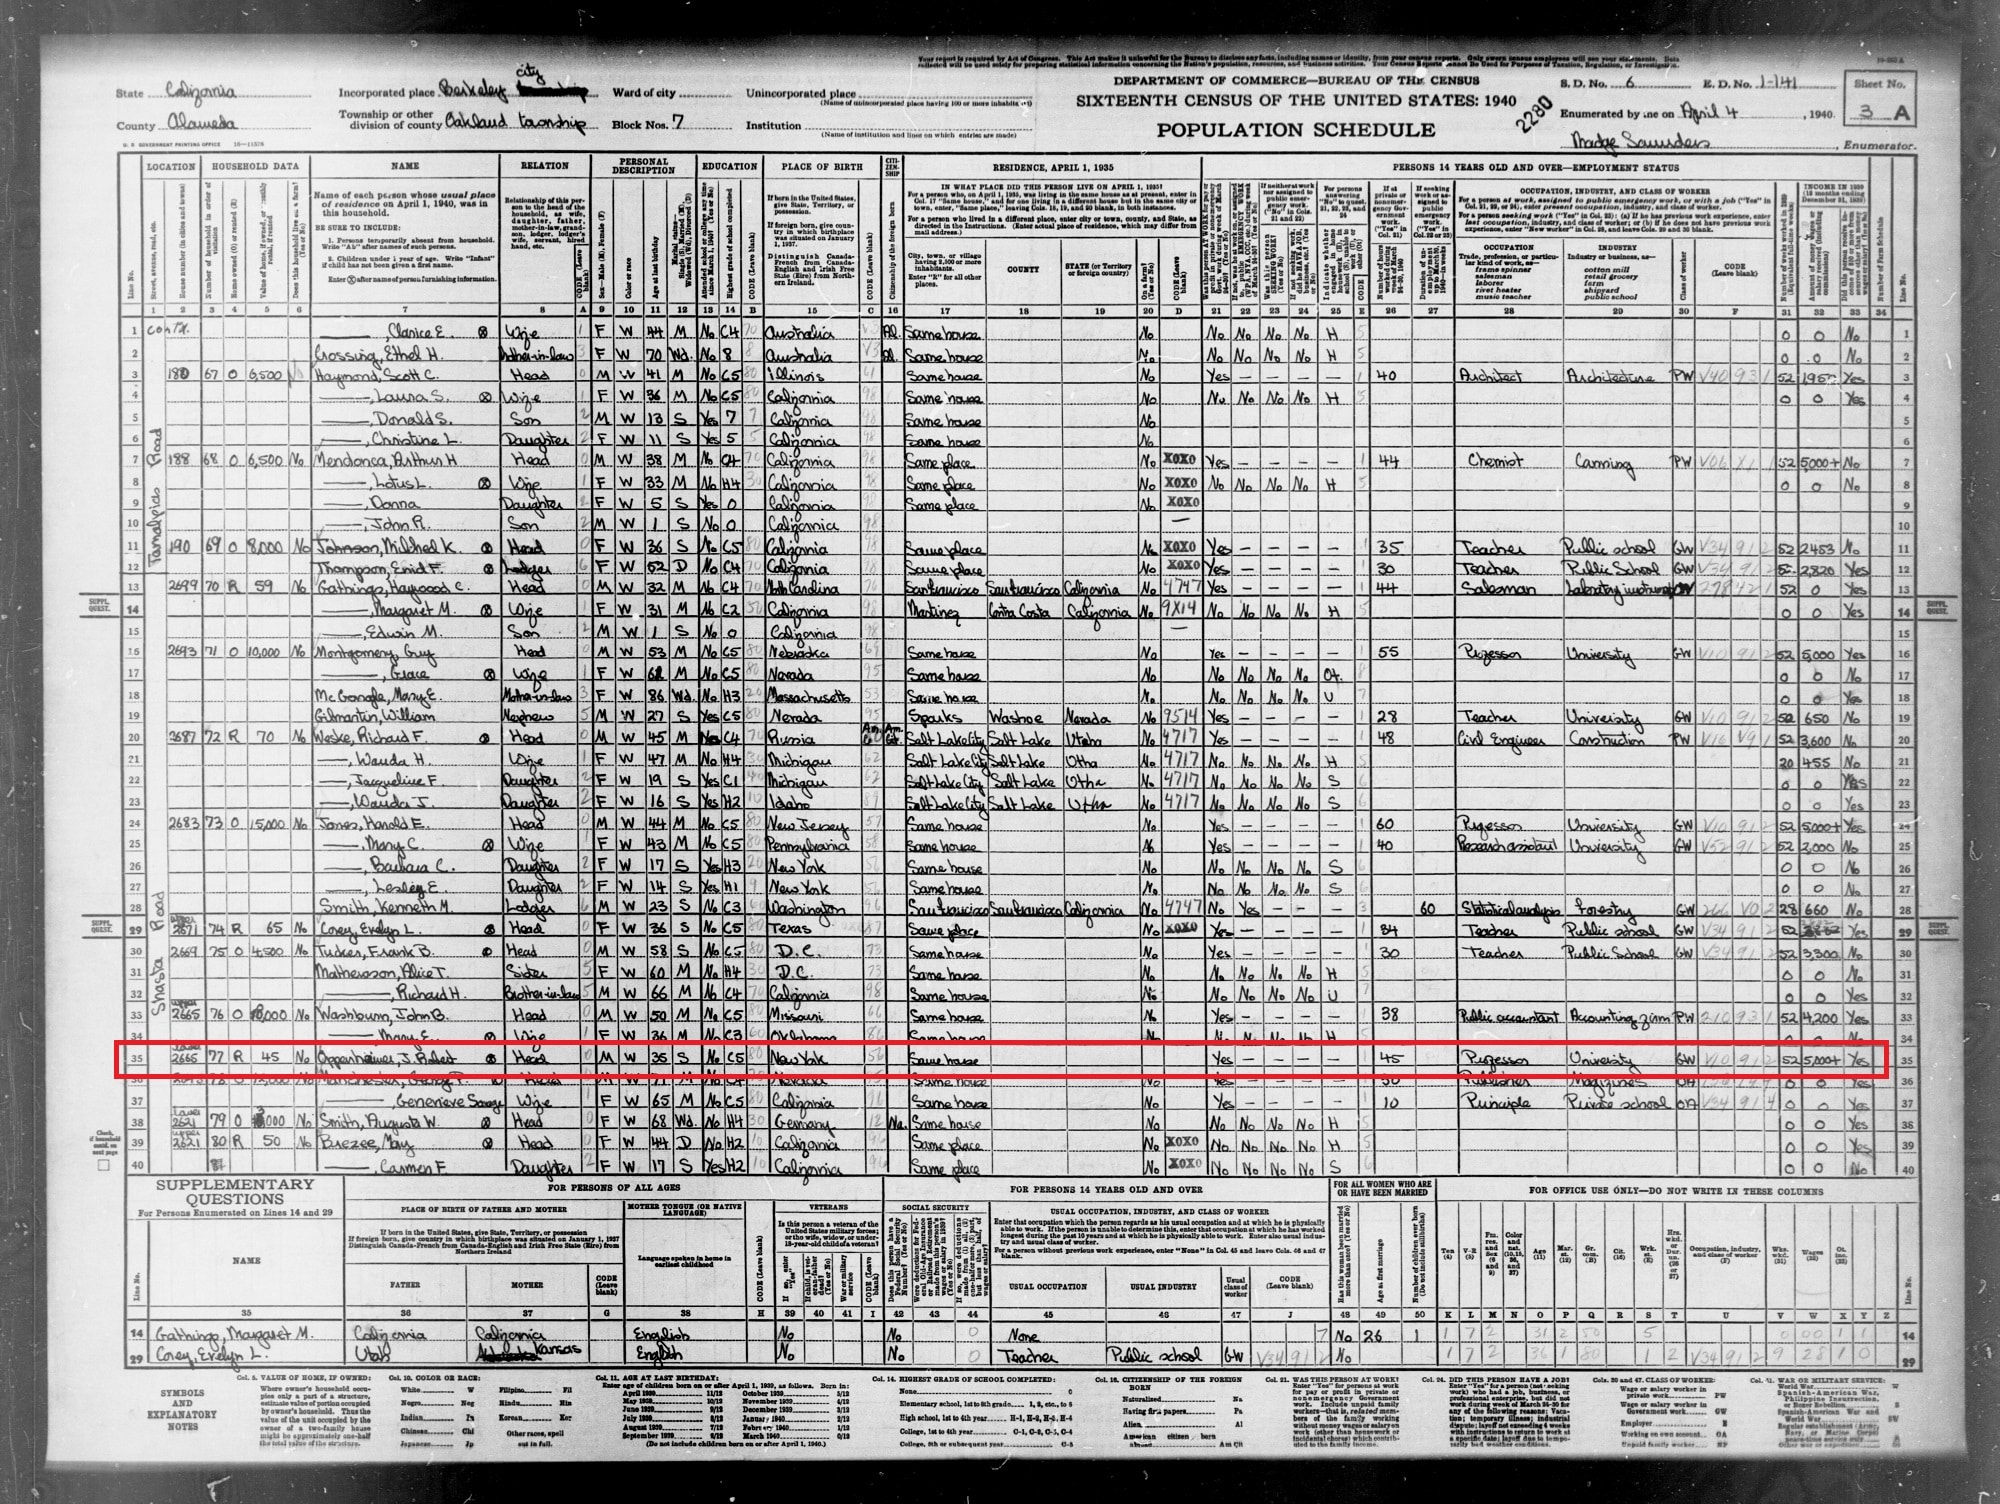 J. Robert Oppenheimer ist in der Volkszählung von 1940 als Universitätsprofessor in Berkeley aufgeführt (zum Vergrößern klicken)